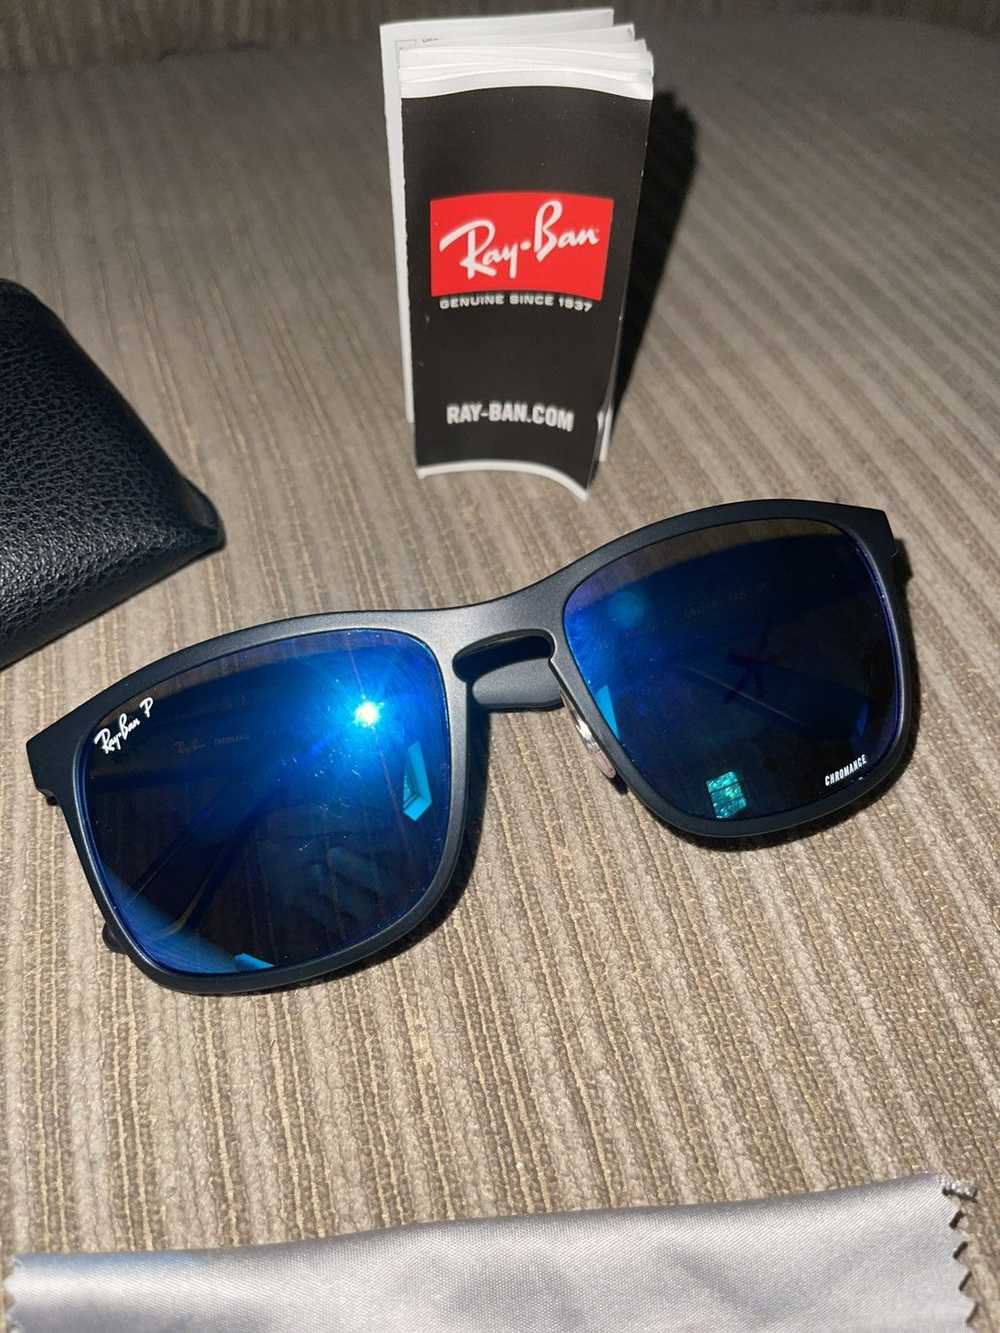 RayBan Ray-Ban P Sunglasses - image 2